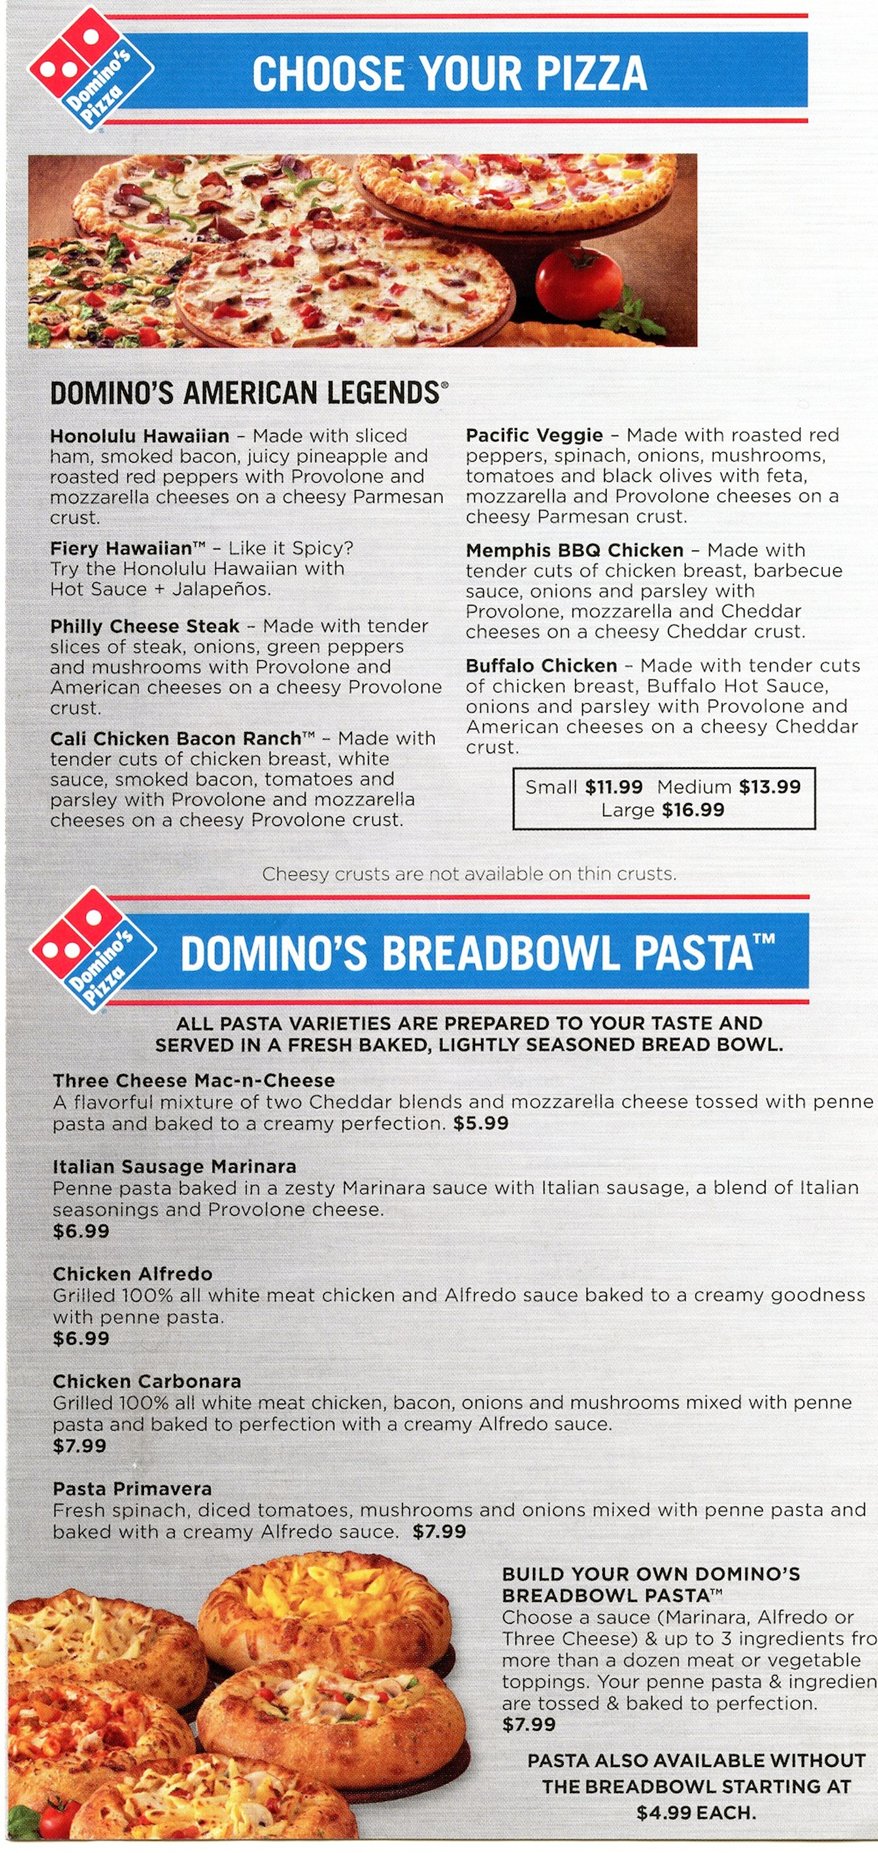 BerkshireMenus.com - Domino's Pizza